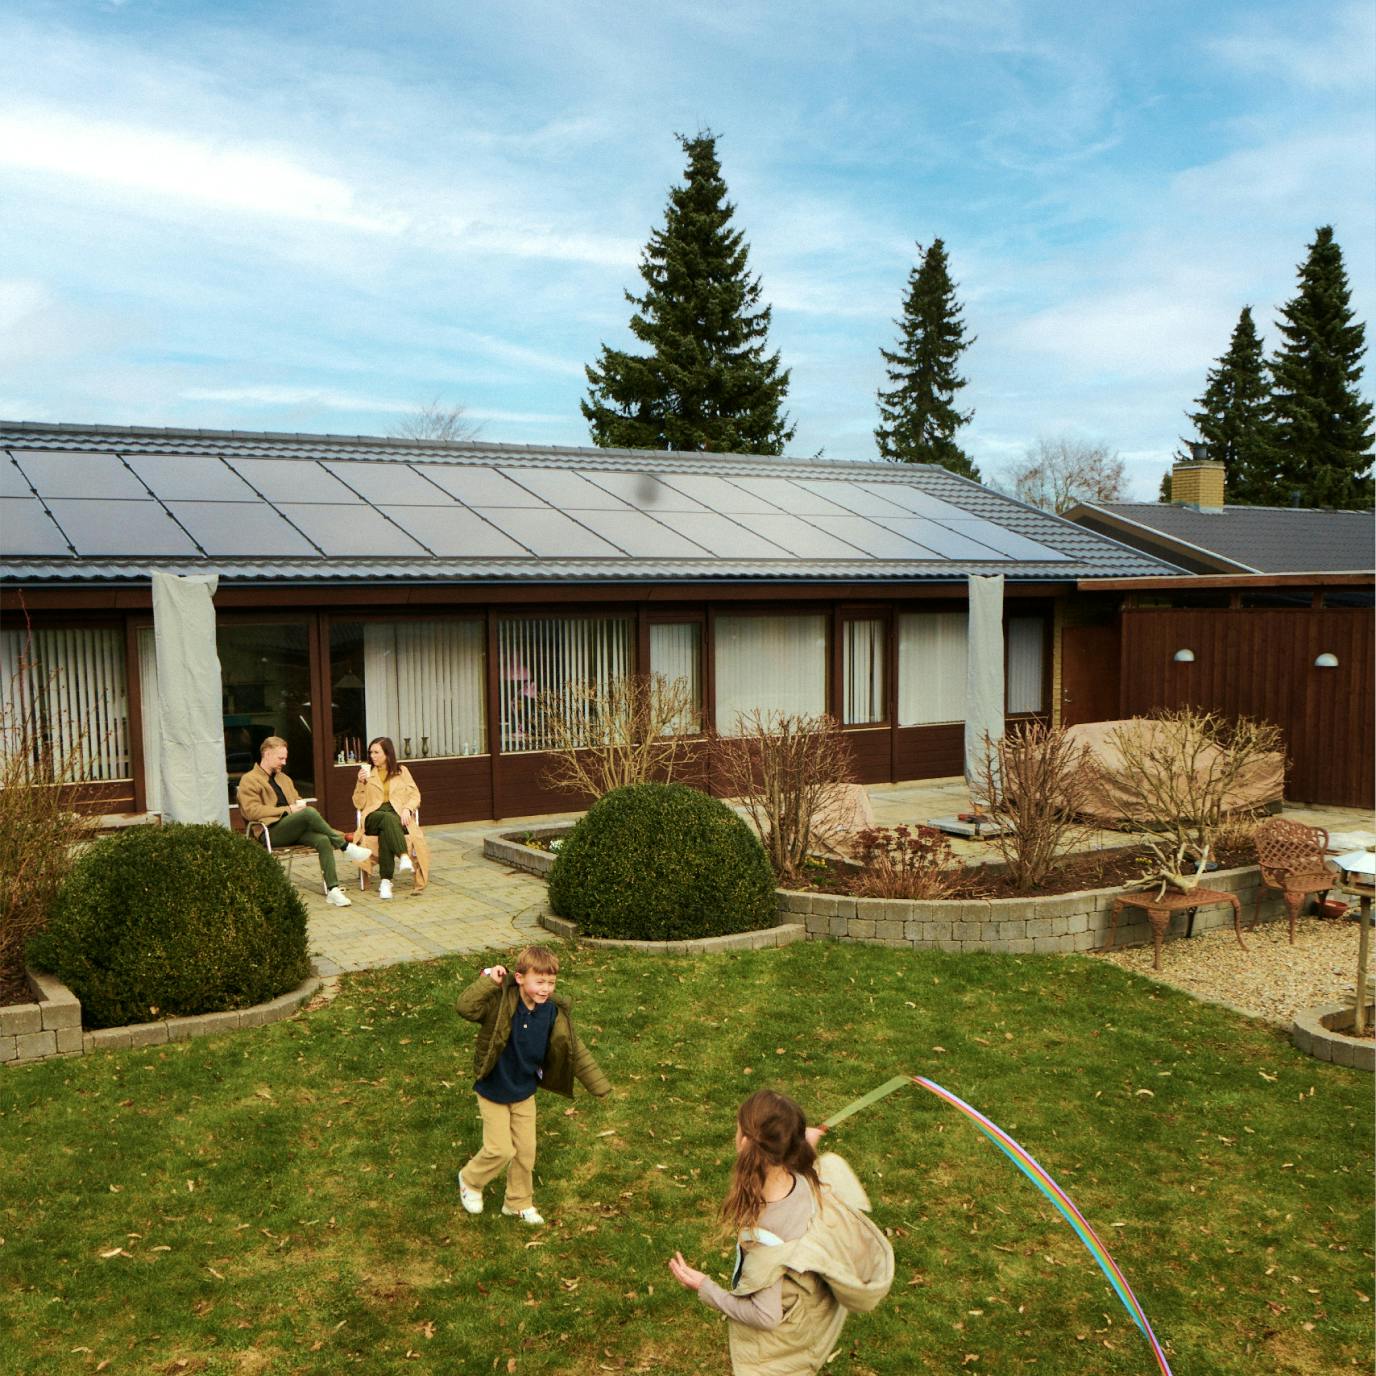 Familie i haven med hus i baggrunden med solceller på taget